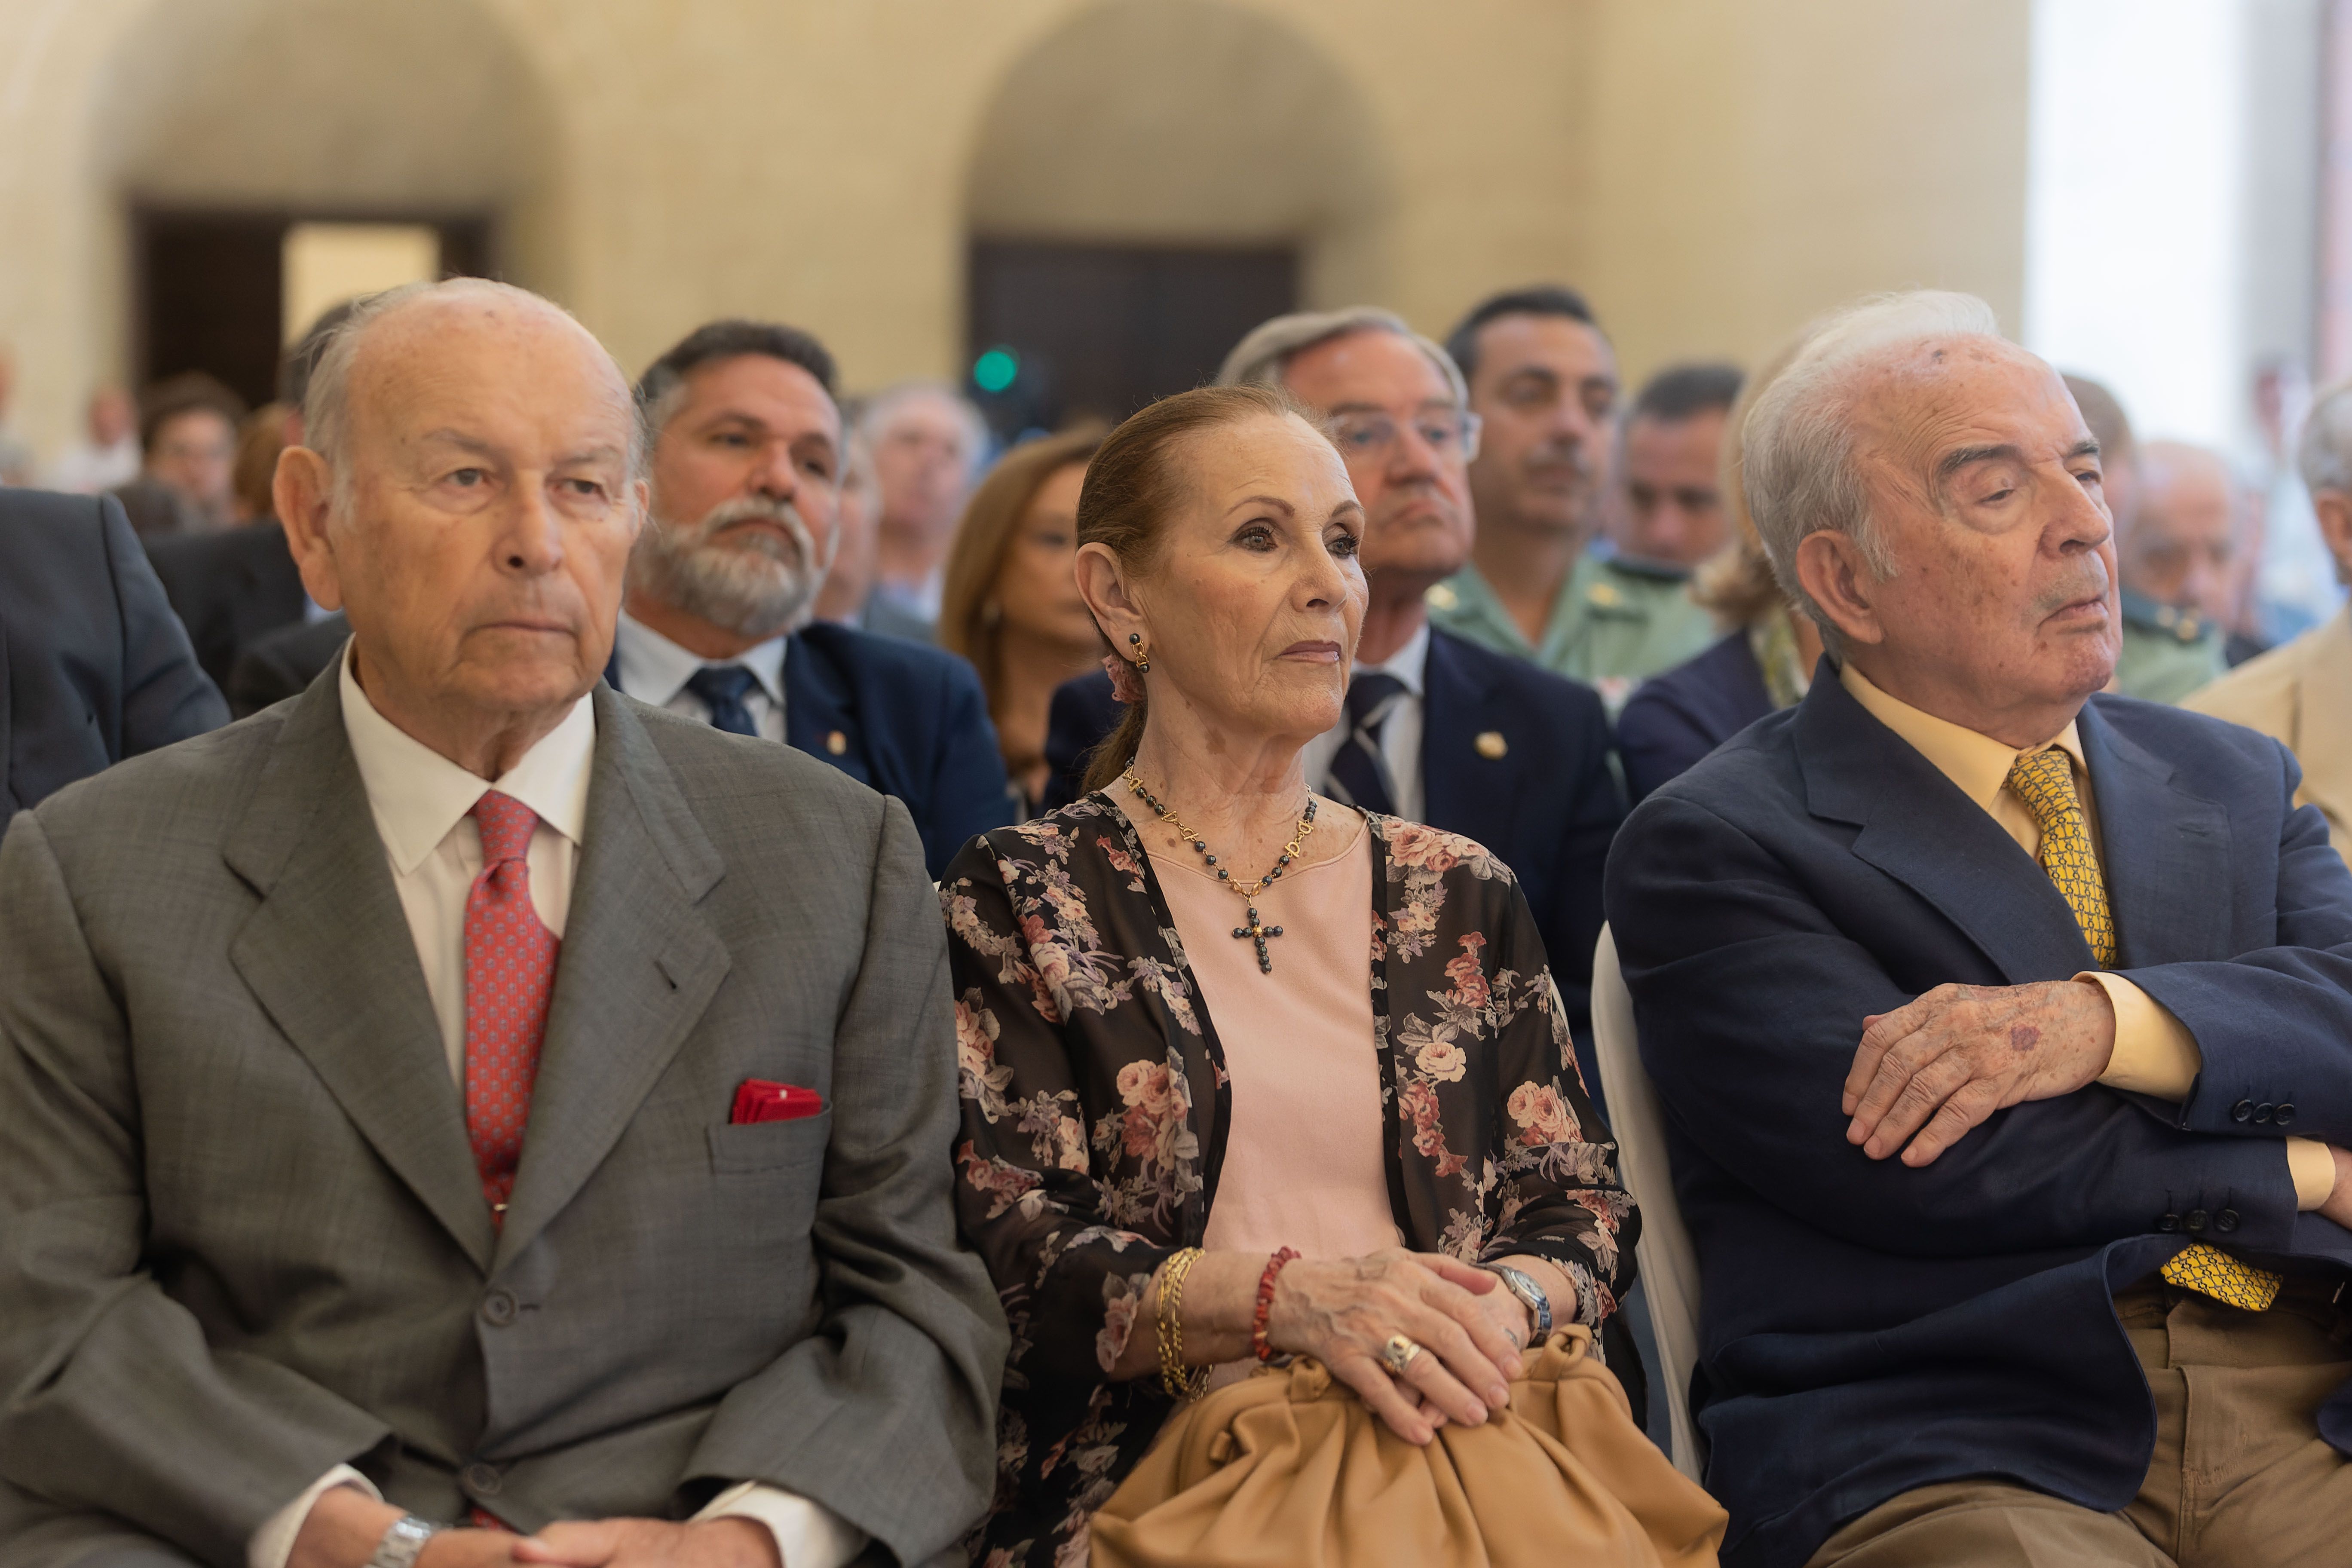 Álvaro Domecq, Angelita Gómez y Pepe Marín, entre los asistentes al acto.    MANU GARCÍA